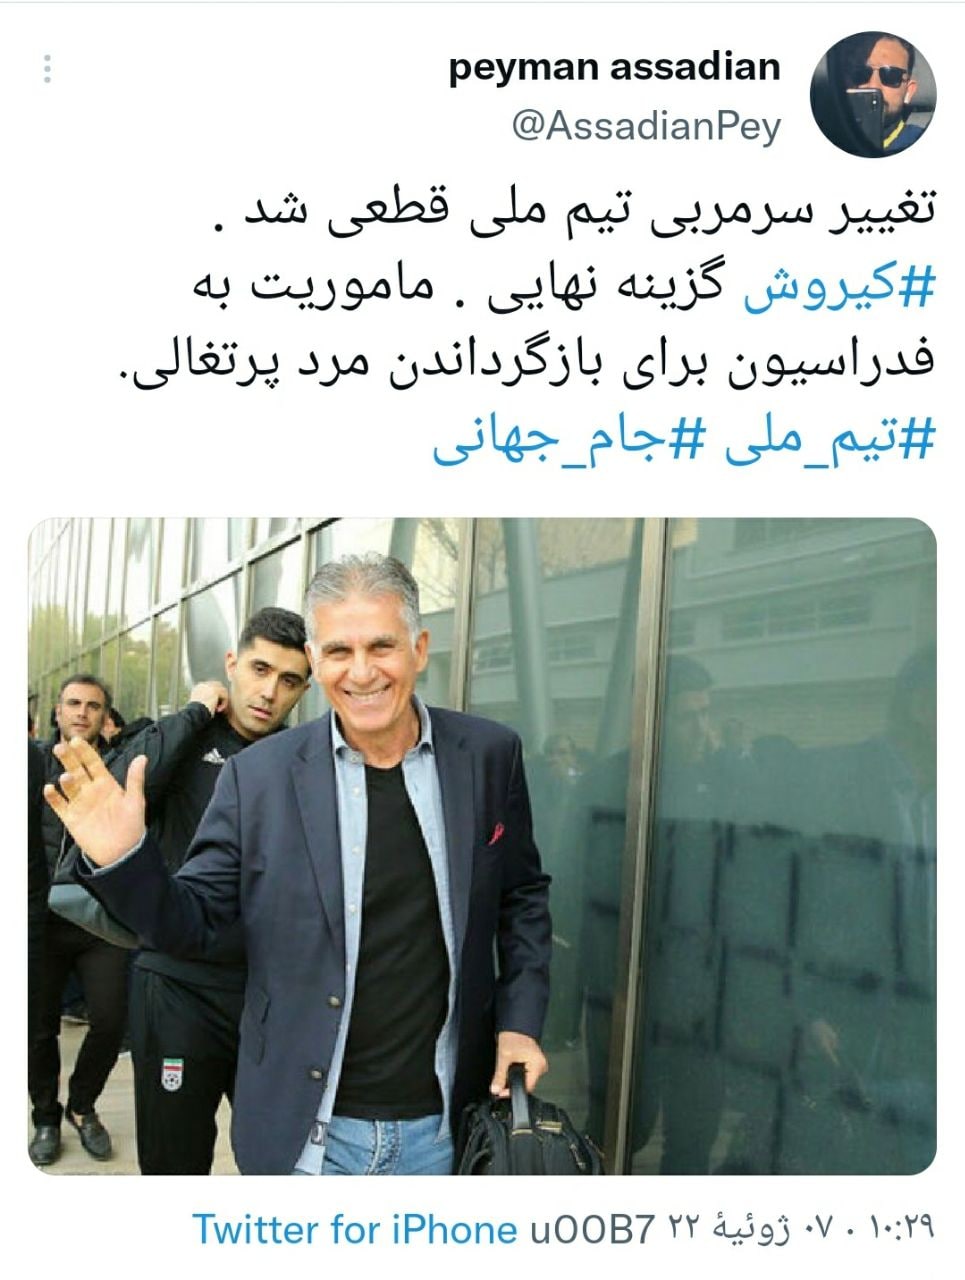 کی‌روش سرمربی قطعی تیم ملی فوتبال شد! / یک سرمربی ایرانی در صورت رد پیشنهاد ازسوی مرد پرتغالی